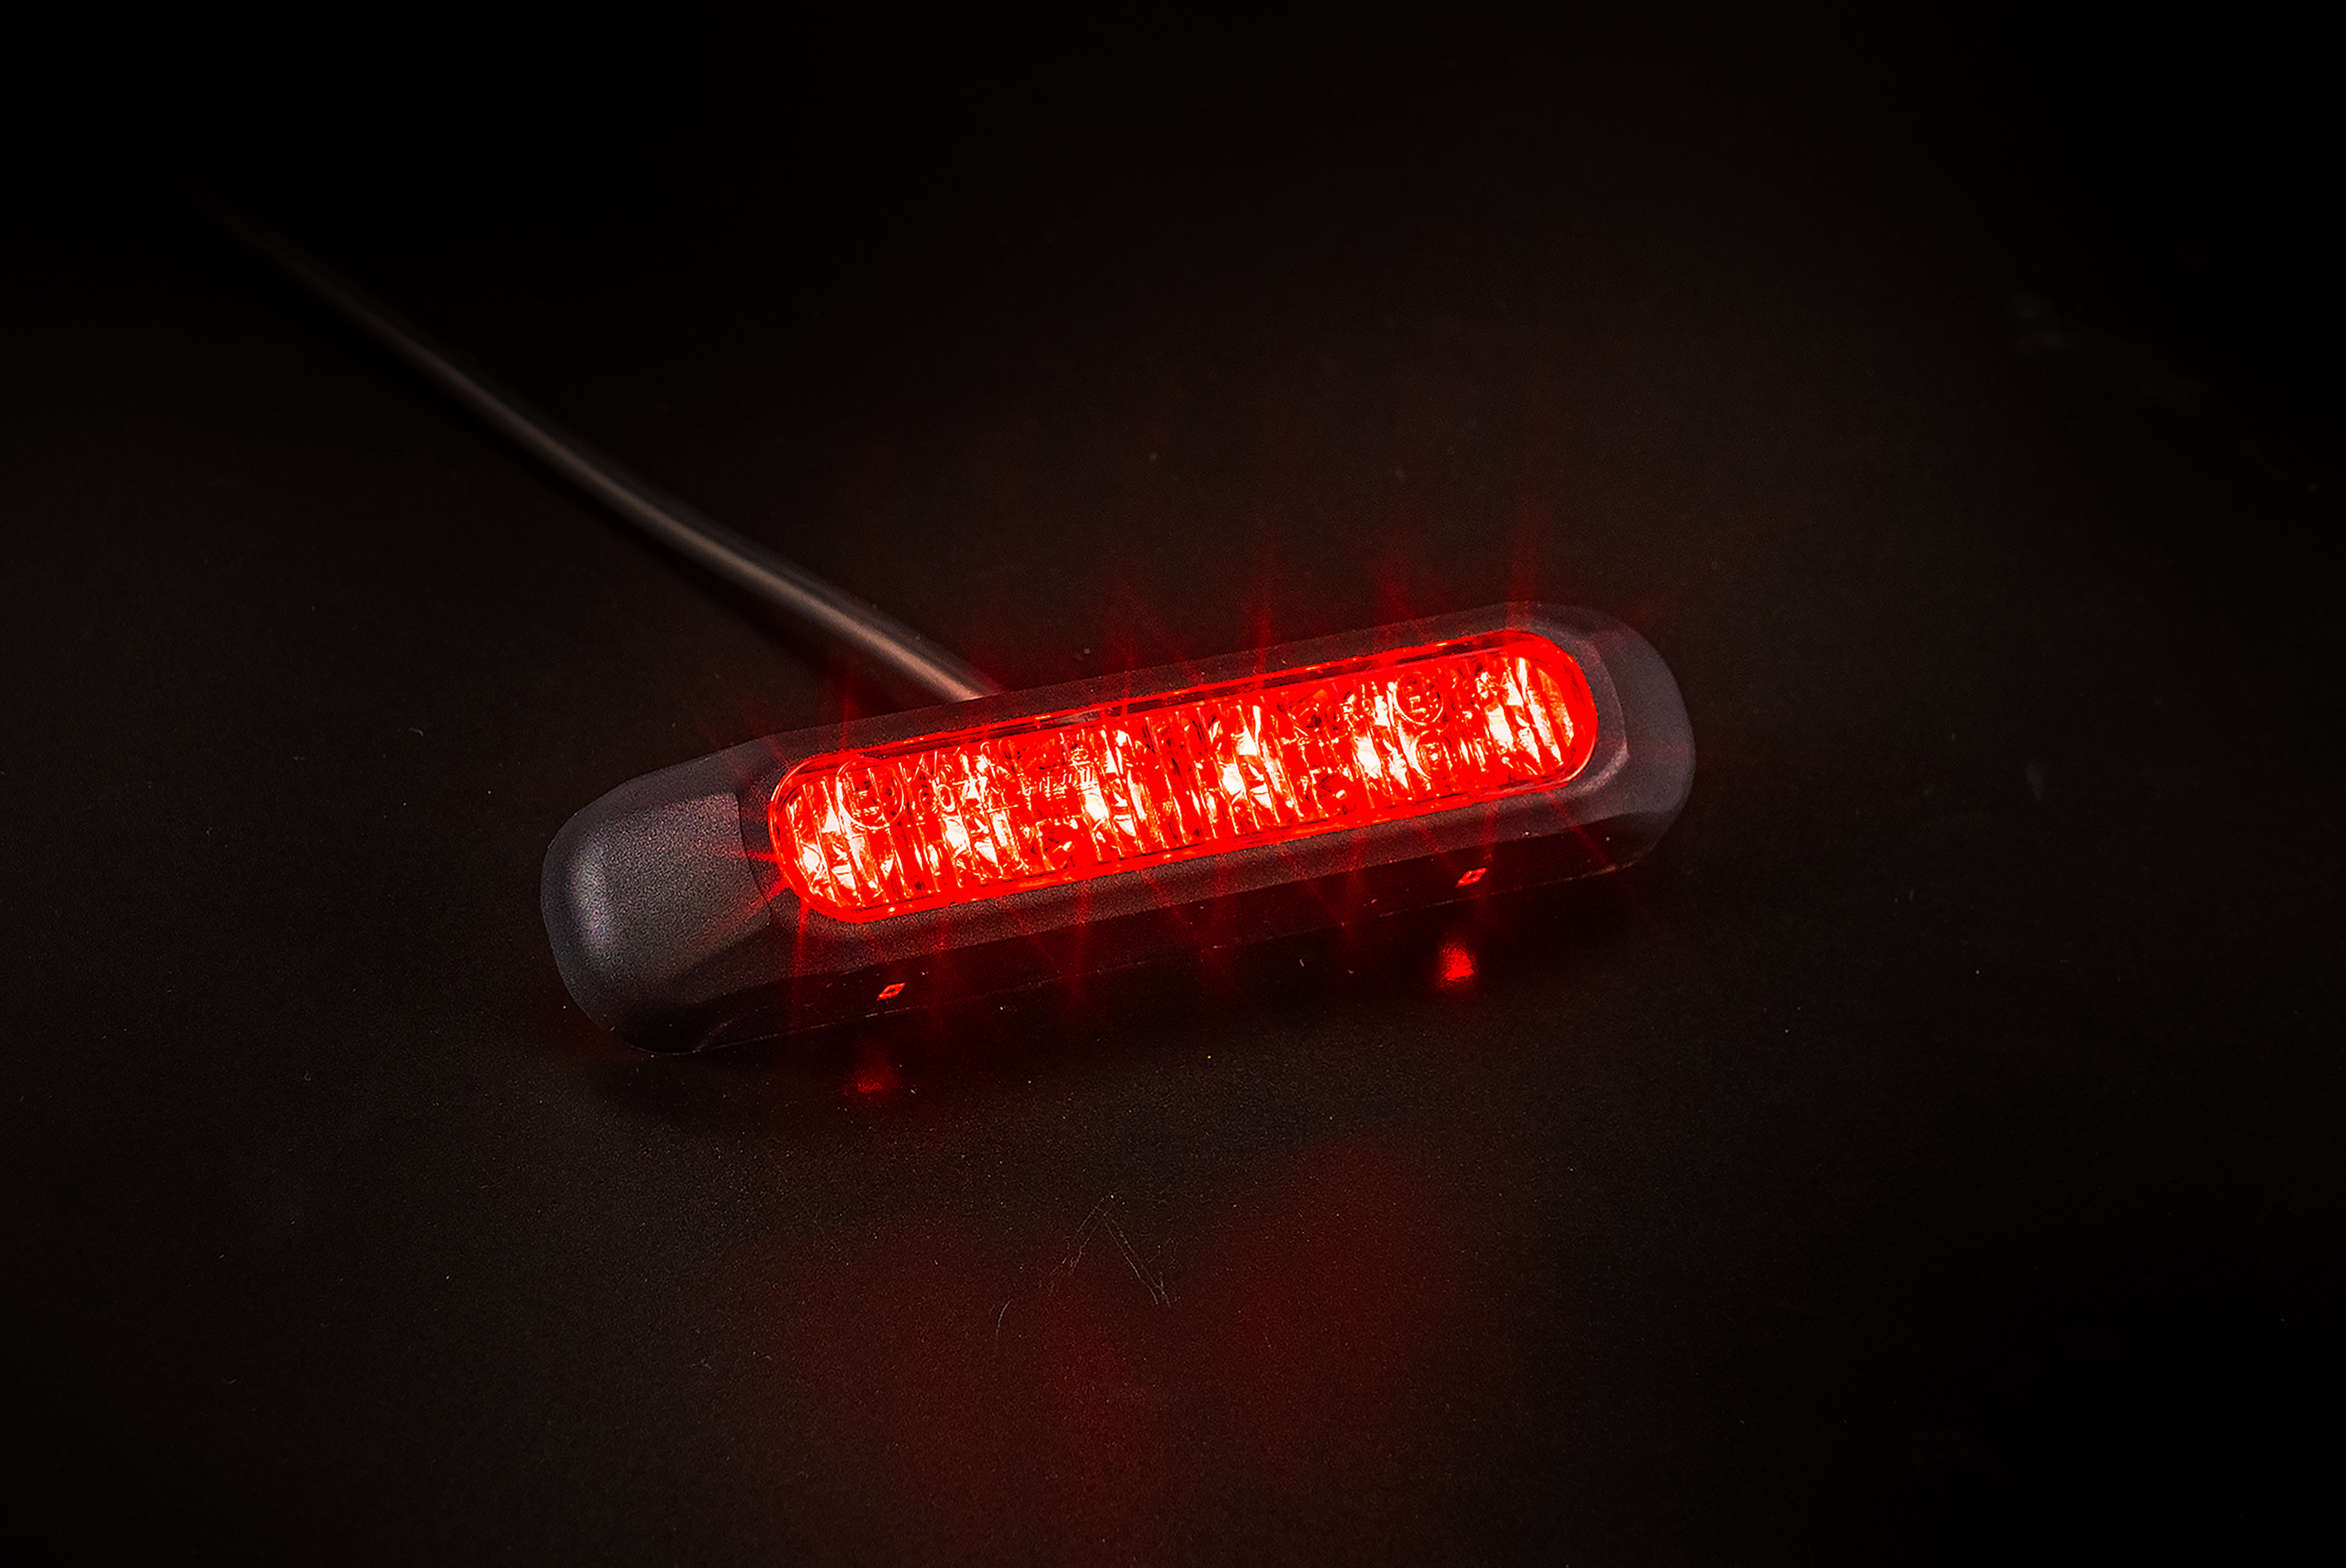 Llum estroboscópica LED de lents fumades fosques de Fristom / Vermell - spo-cs-disabled - spo-default - spo-enabled - spo-notify-me-disabled